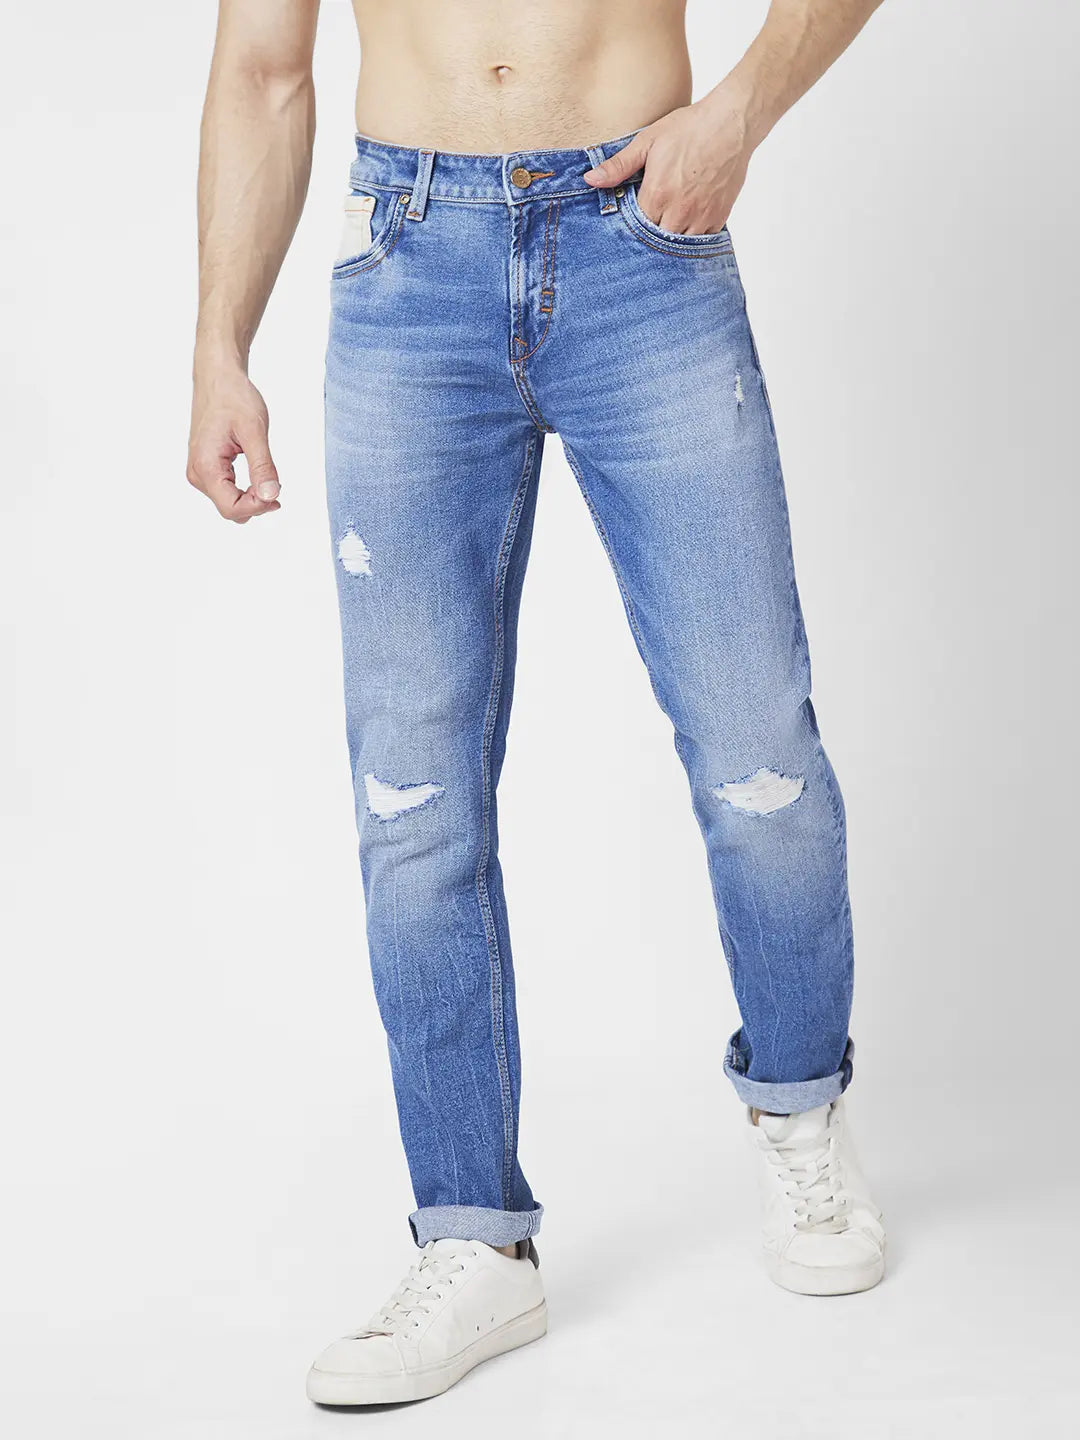 Spykar Men Dark Blue Cotton Super Slim Fit Ankle Length Jeans (Super Skinny  ) - mdss1bc012darkblue